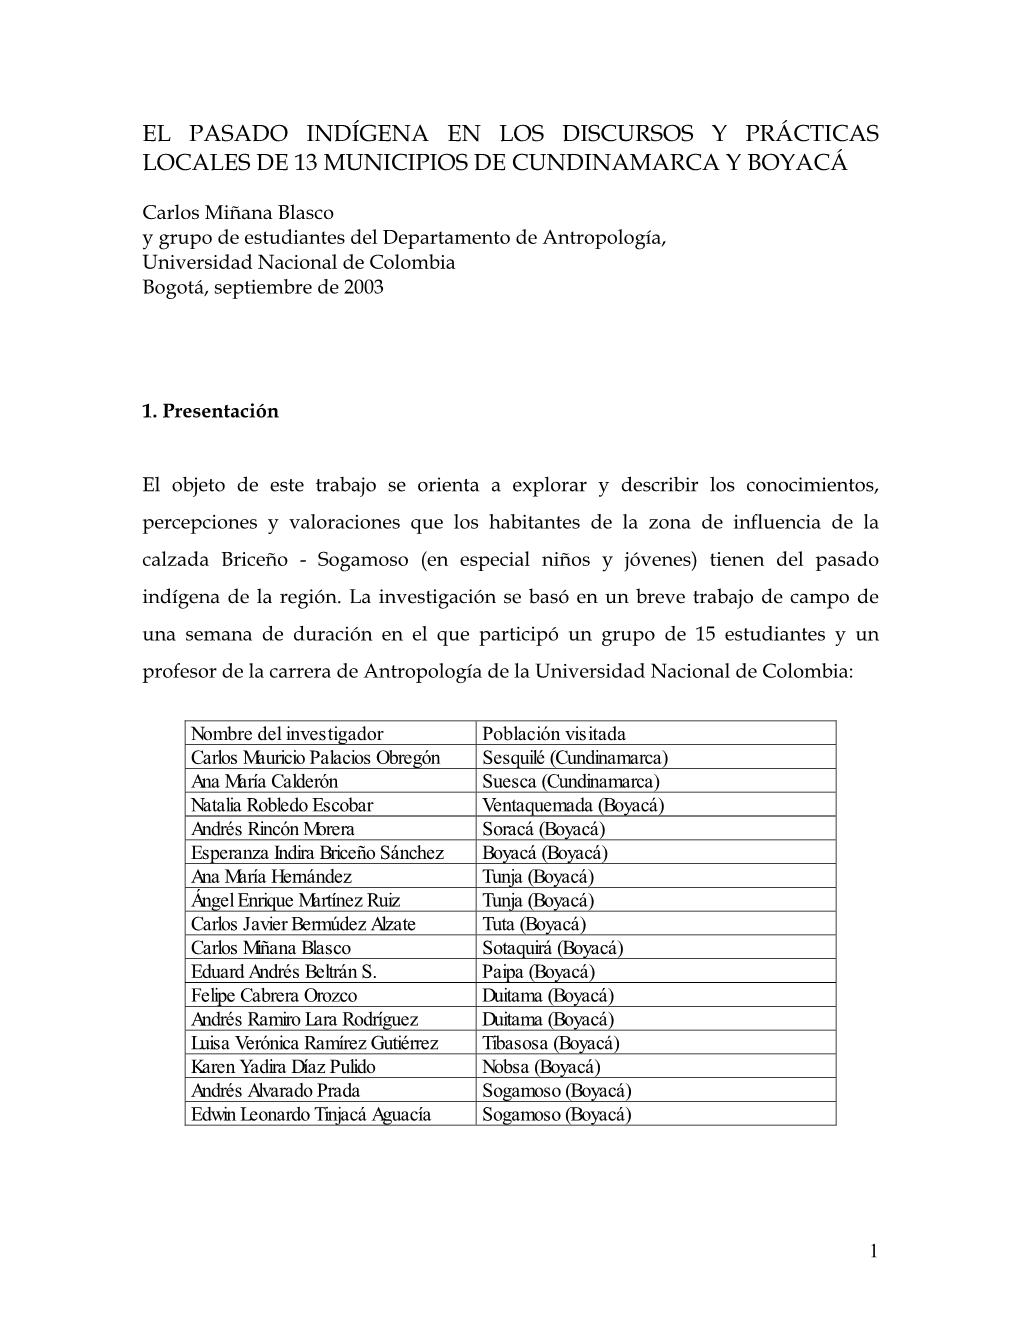 El Pasado Indígena En Los Discursos Y Prácticas Locales De 13 Municipios De Cundinamarca Y Boyacá